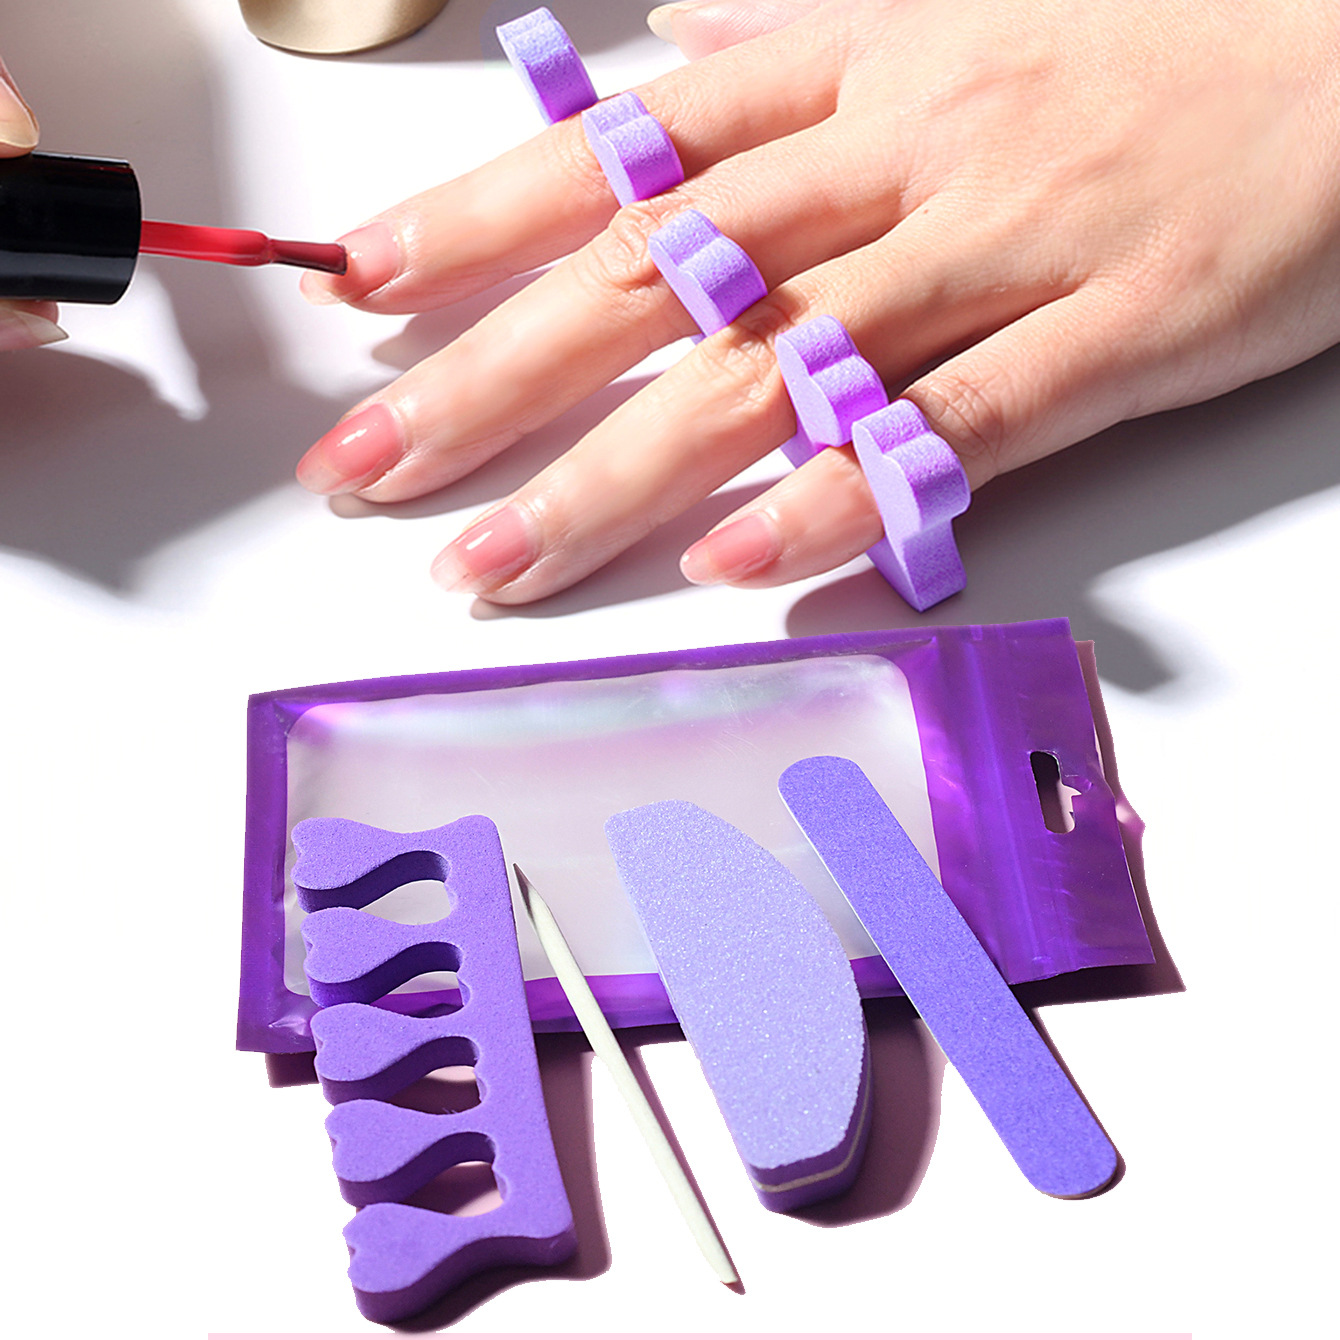 美甲工具紫色套装清桔棒分指器修甲木片指甲锉美甲铺助工具指甲油